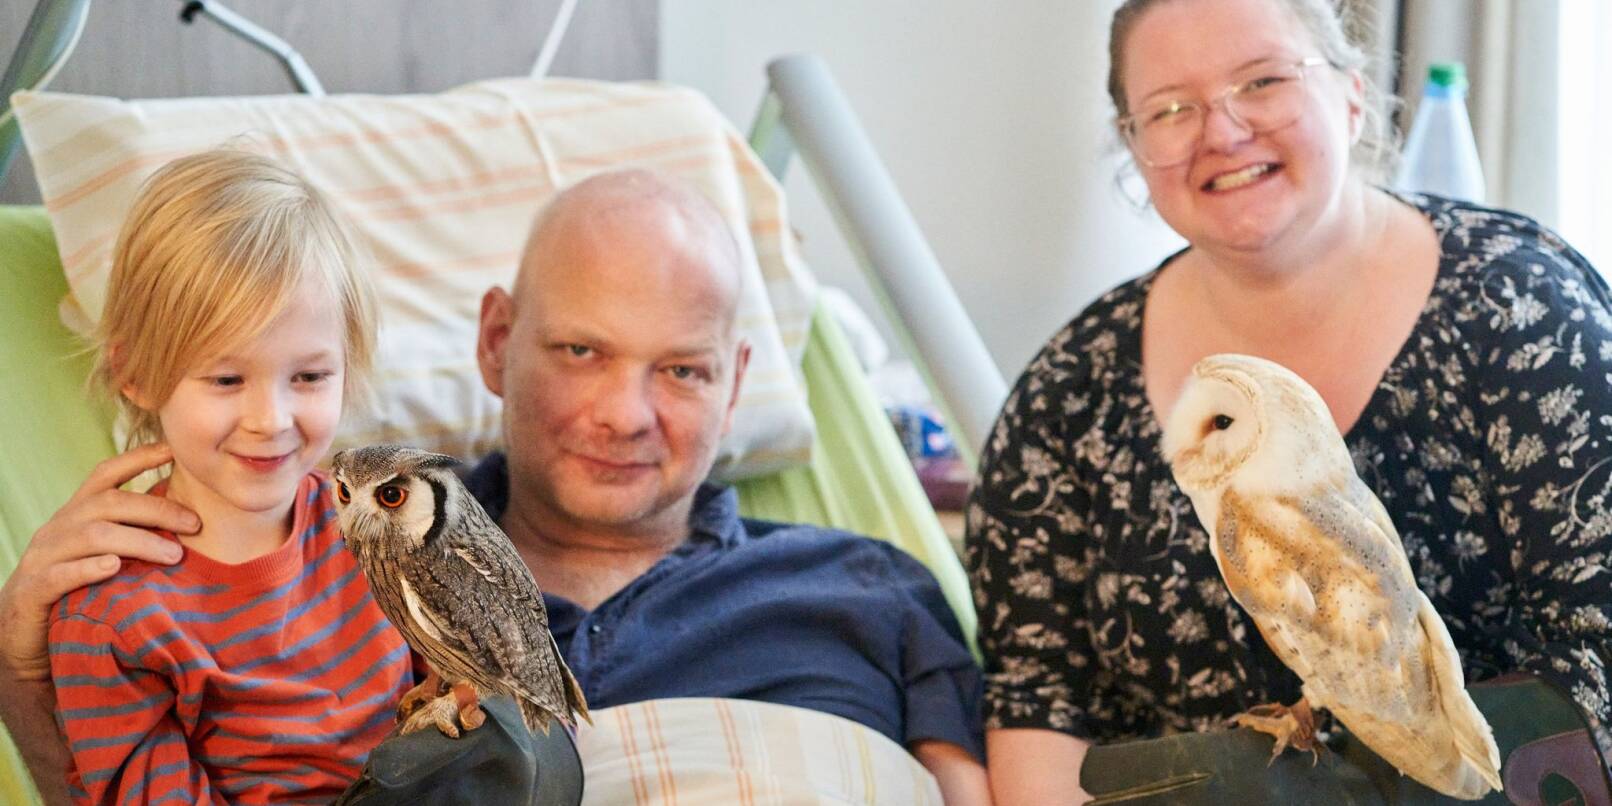 Swen Pinkatschek (M), der an einem Hirntumor leidet, freut sich mit seiner Frau Tamara und seinem Sohn Claas (7) über den Besuch von Schleiereule Emma und Weißgesichtseule Merlin.